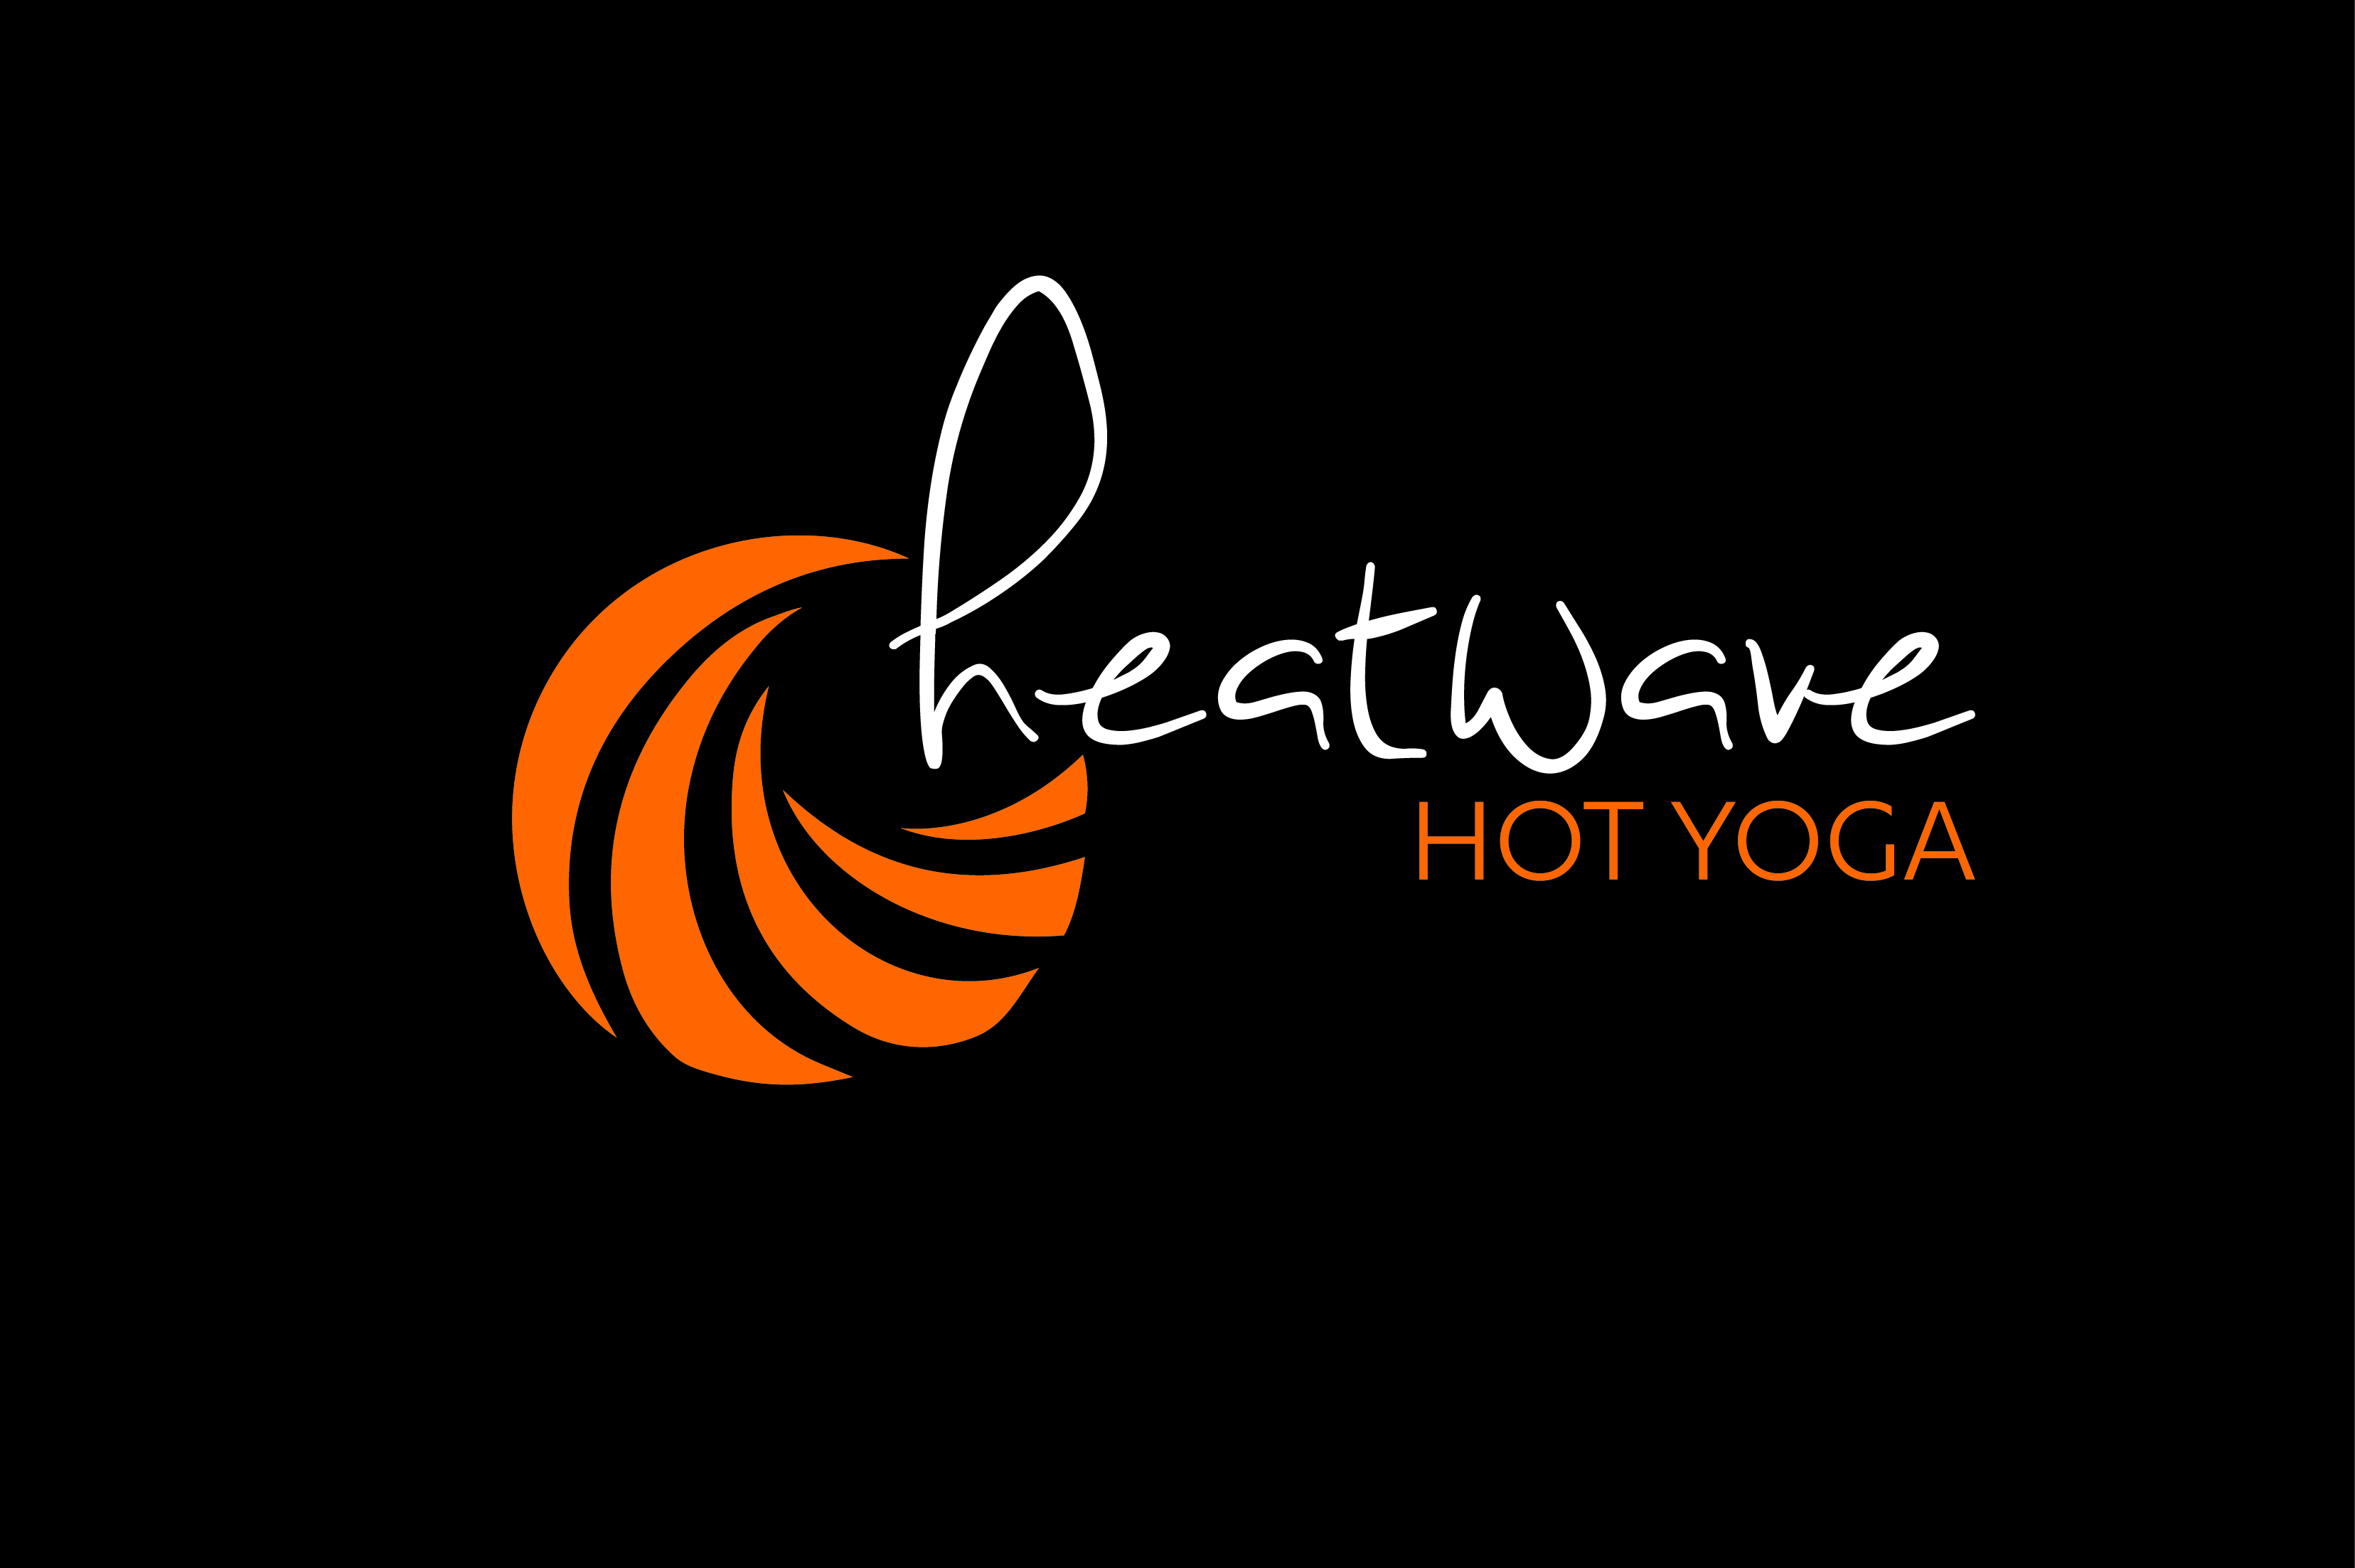 heatwave-hot-yoga-logo-on-blk-2